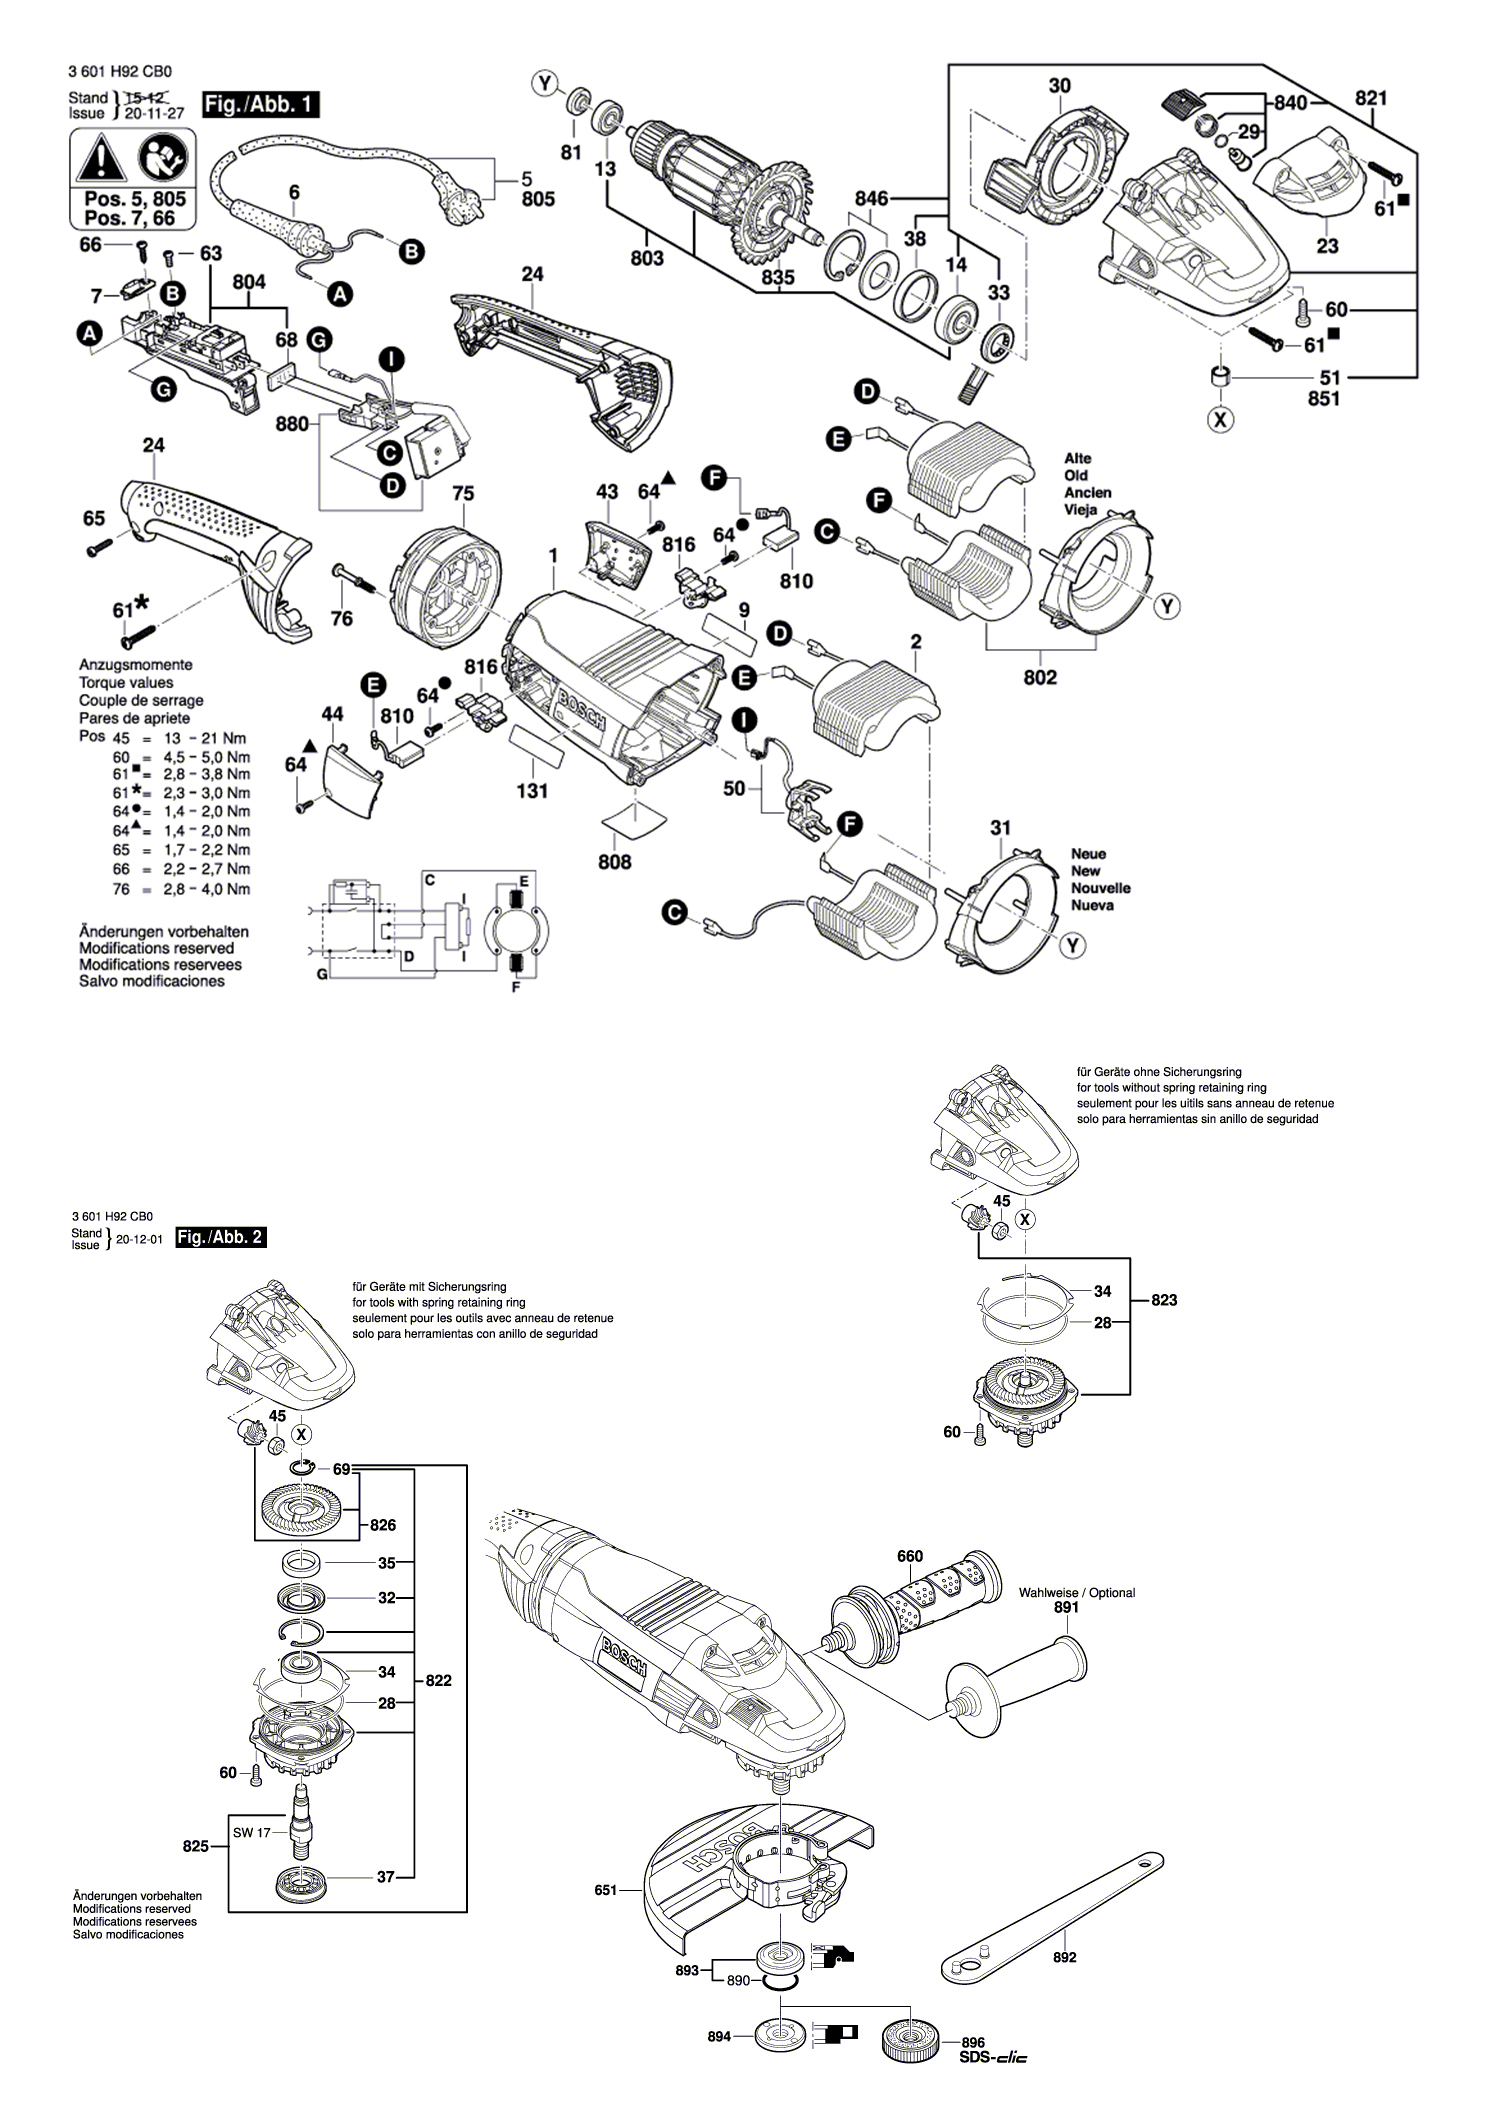 Схема на Угловая шлифмашина Bosch GWS 24-180 LVI (3 601 H92 CB0)